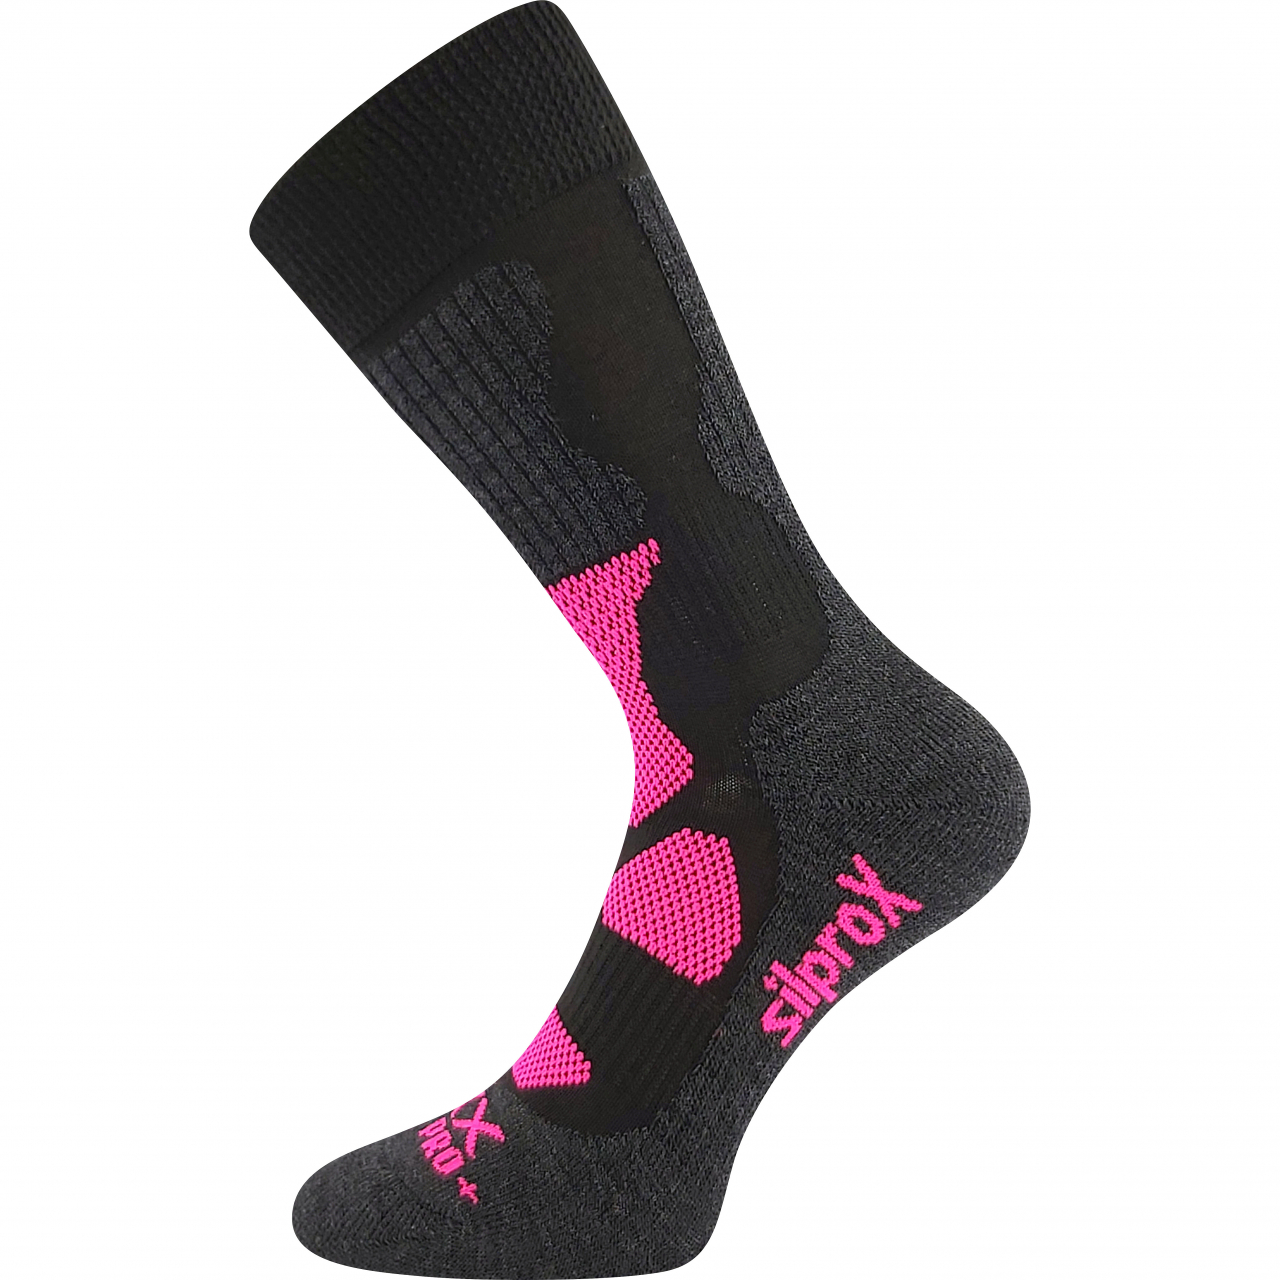 Ponožky termo unisex Voxx Etrex - černé-růžové, 39-42